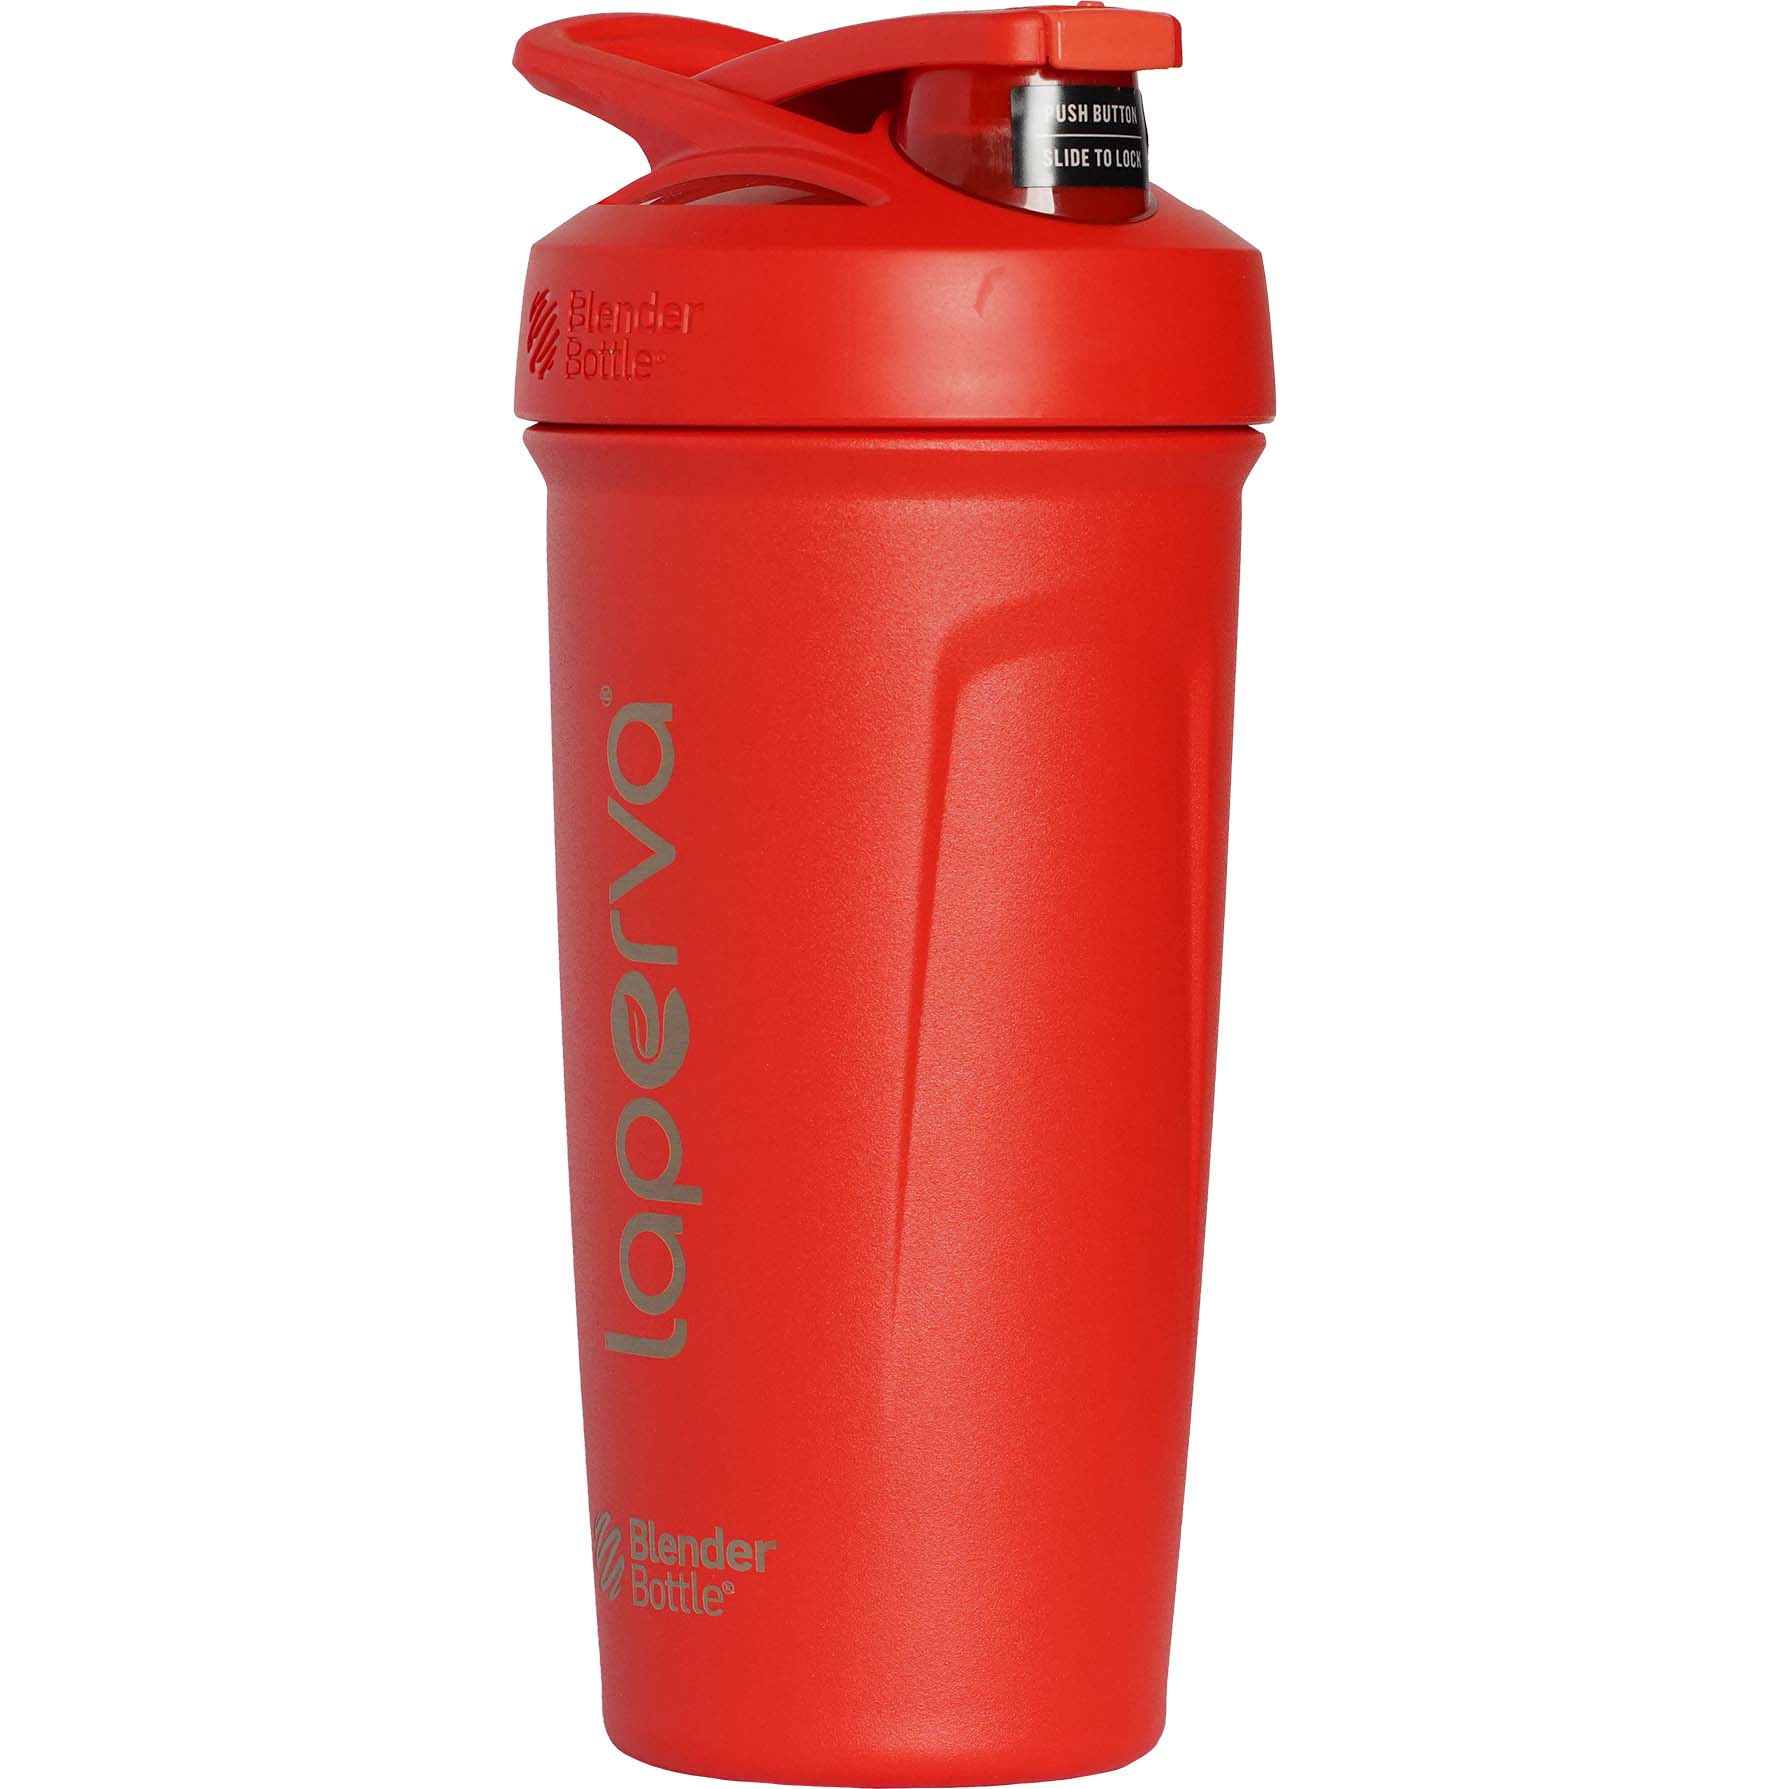 Laperva Blender Bottle Stainless Steel Shaker, Red